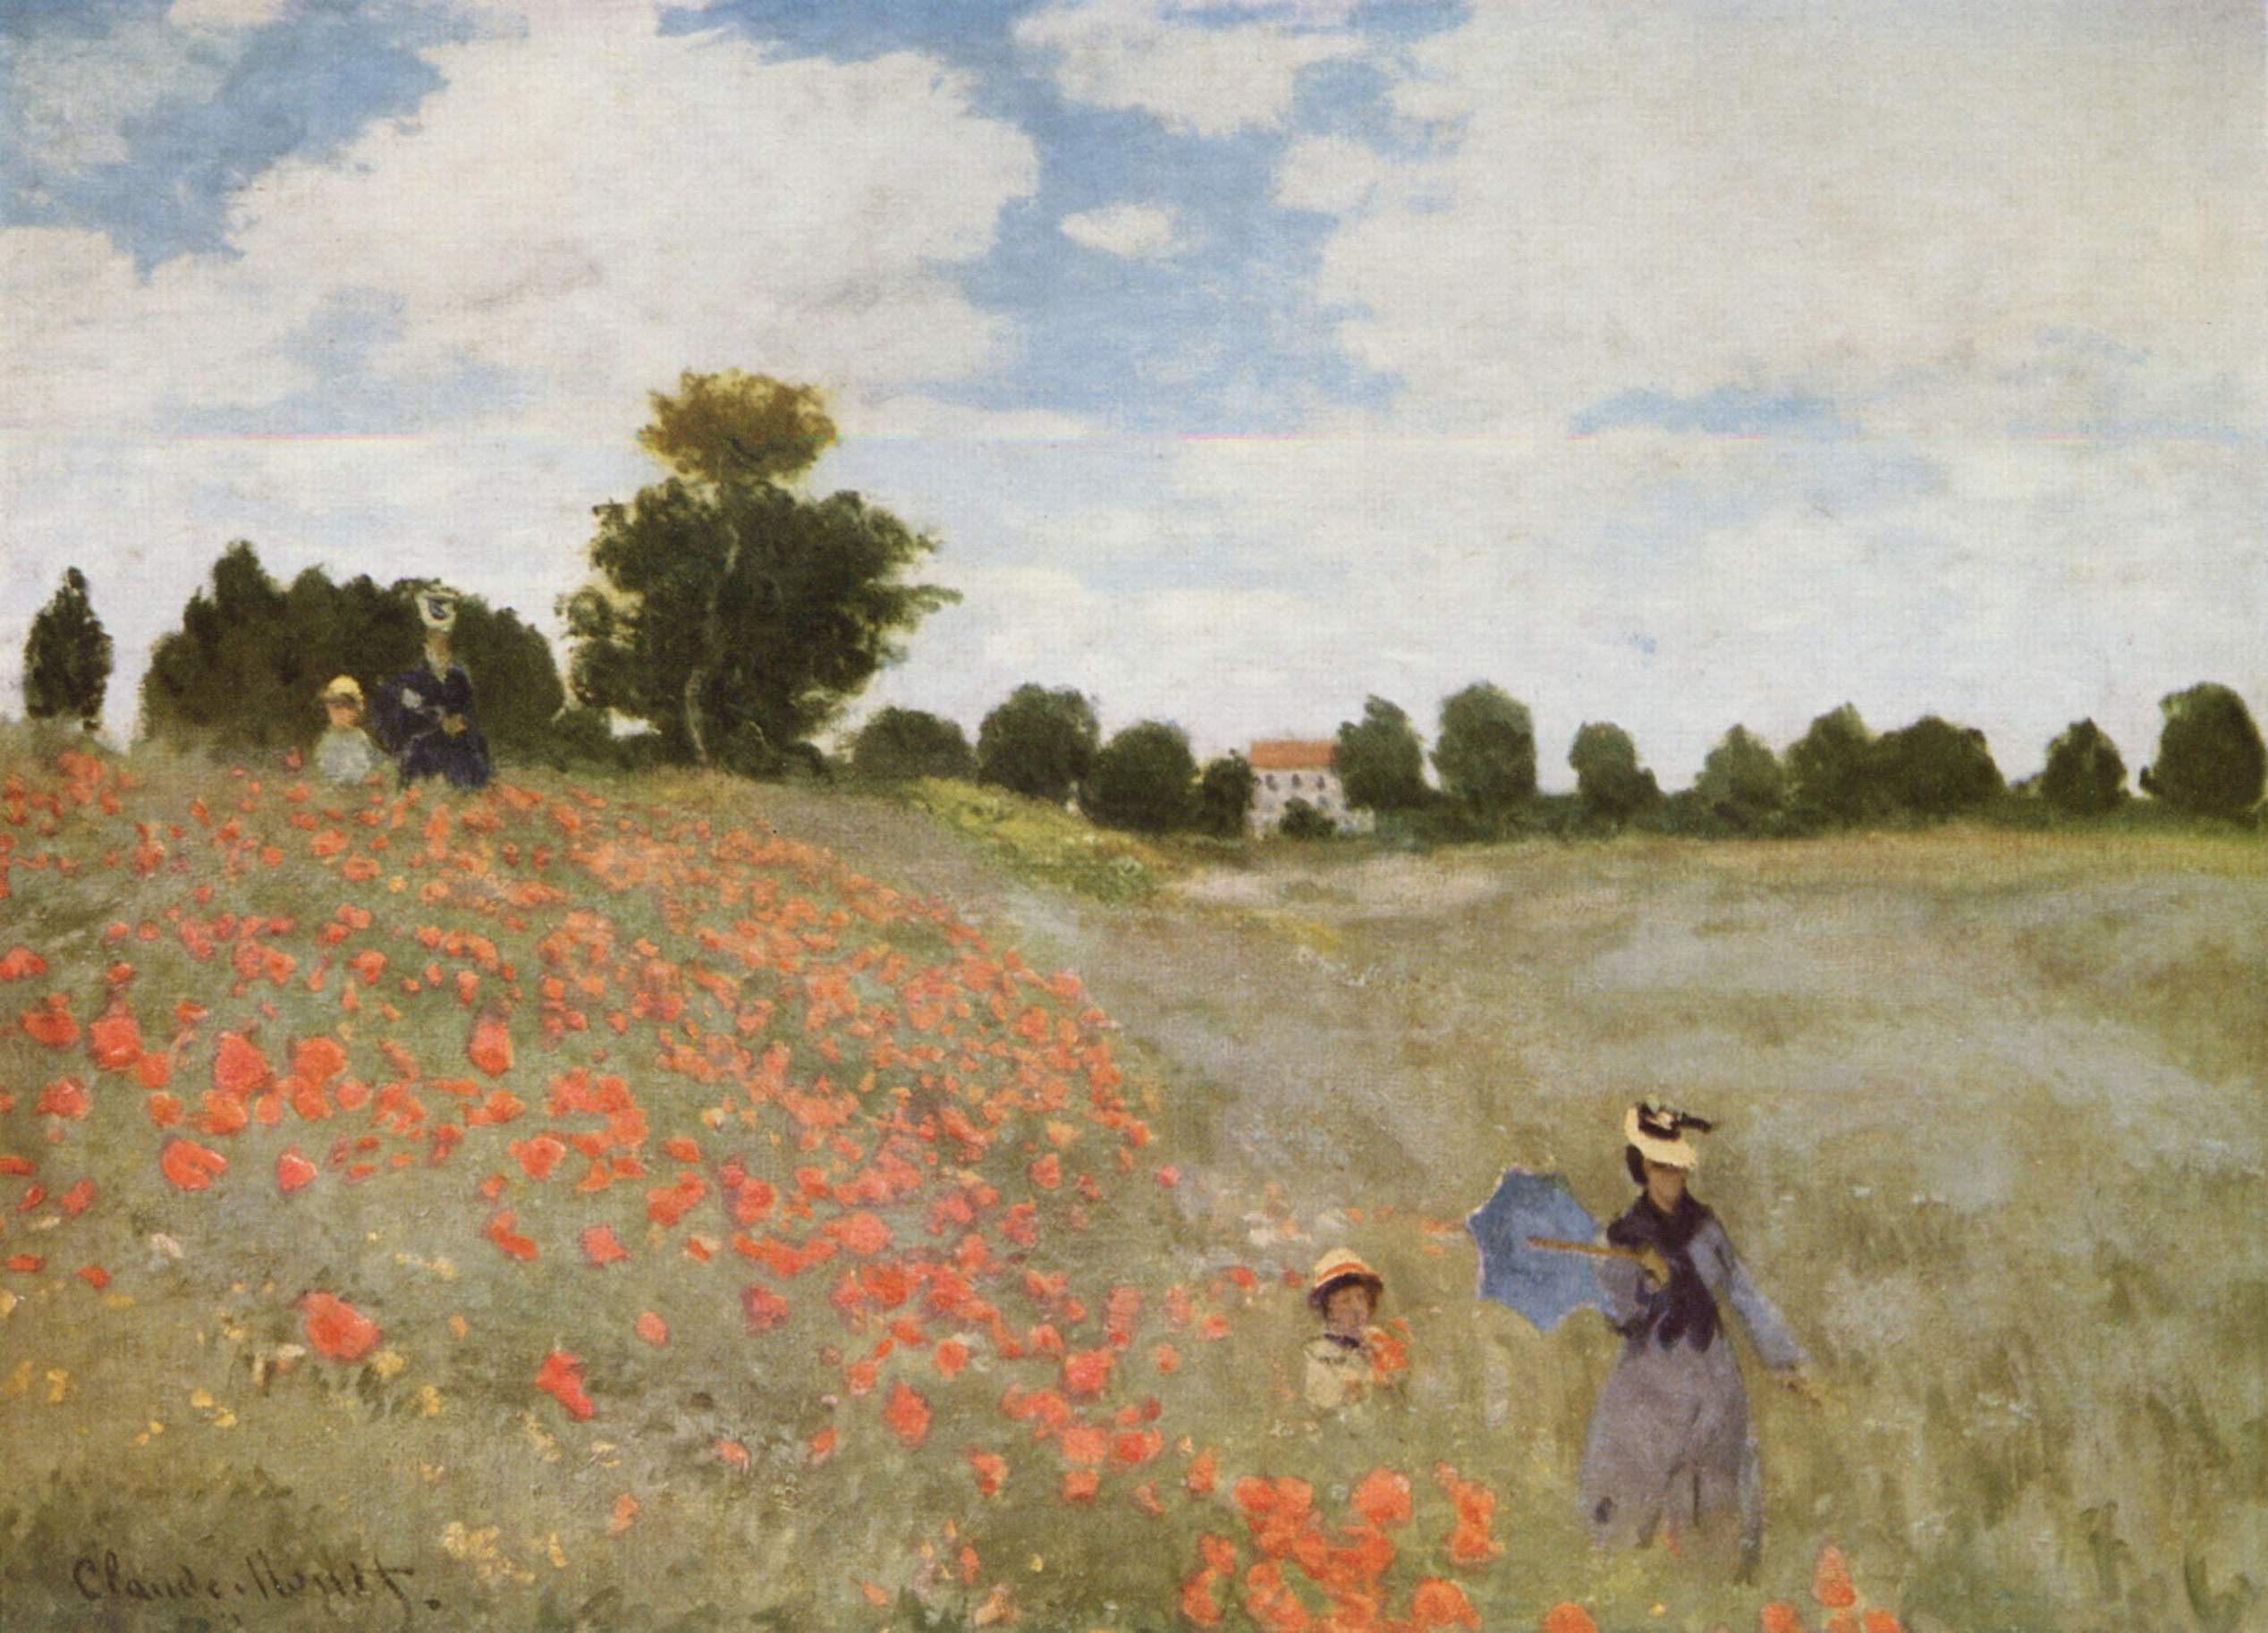 Les coquelicots de Claude Monet : une célébration de la nature et de la lumière